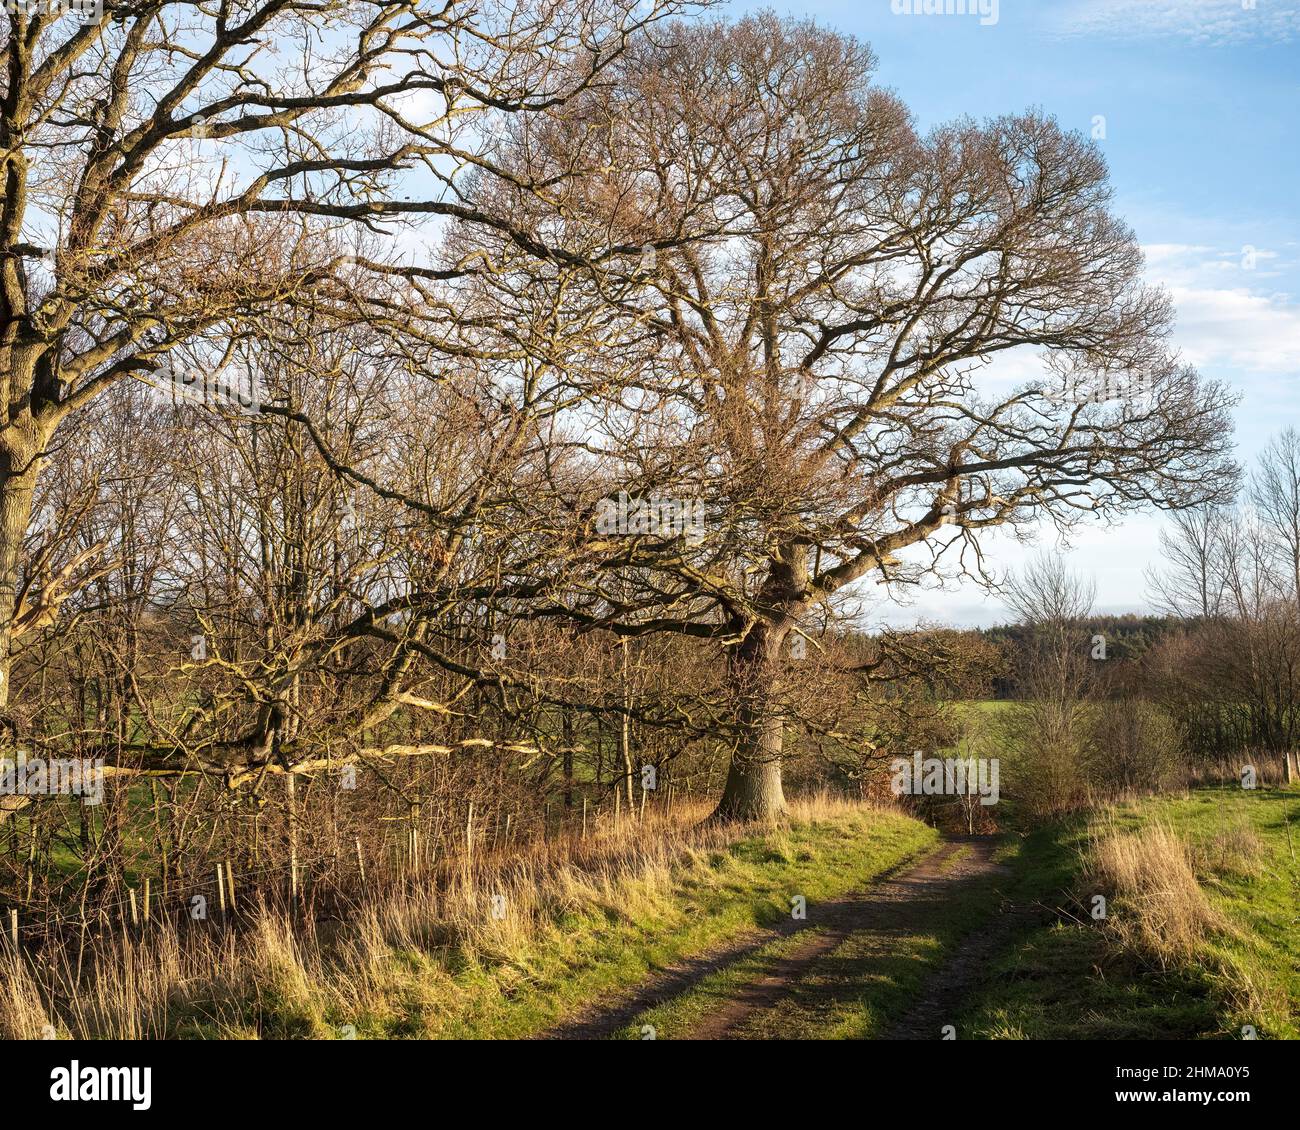 El intrincado marco de un árbol caducifolio en la luz del sol del invierno, Edenhall, Penrith, Cumbria, Reino Unido Foto de stock